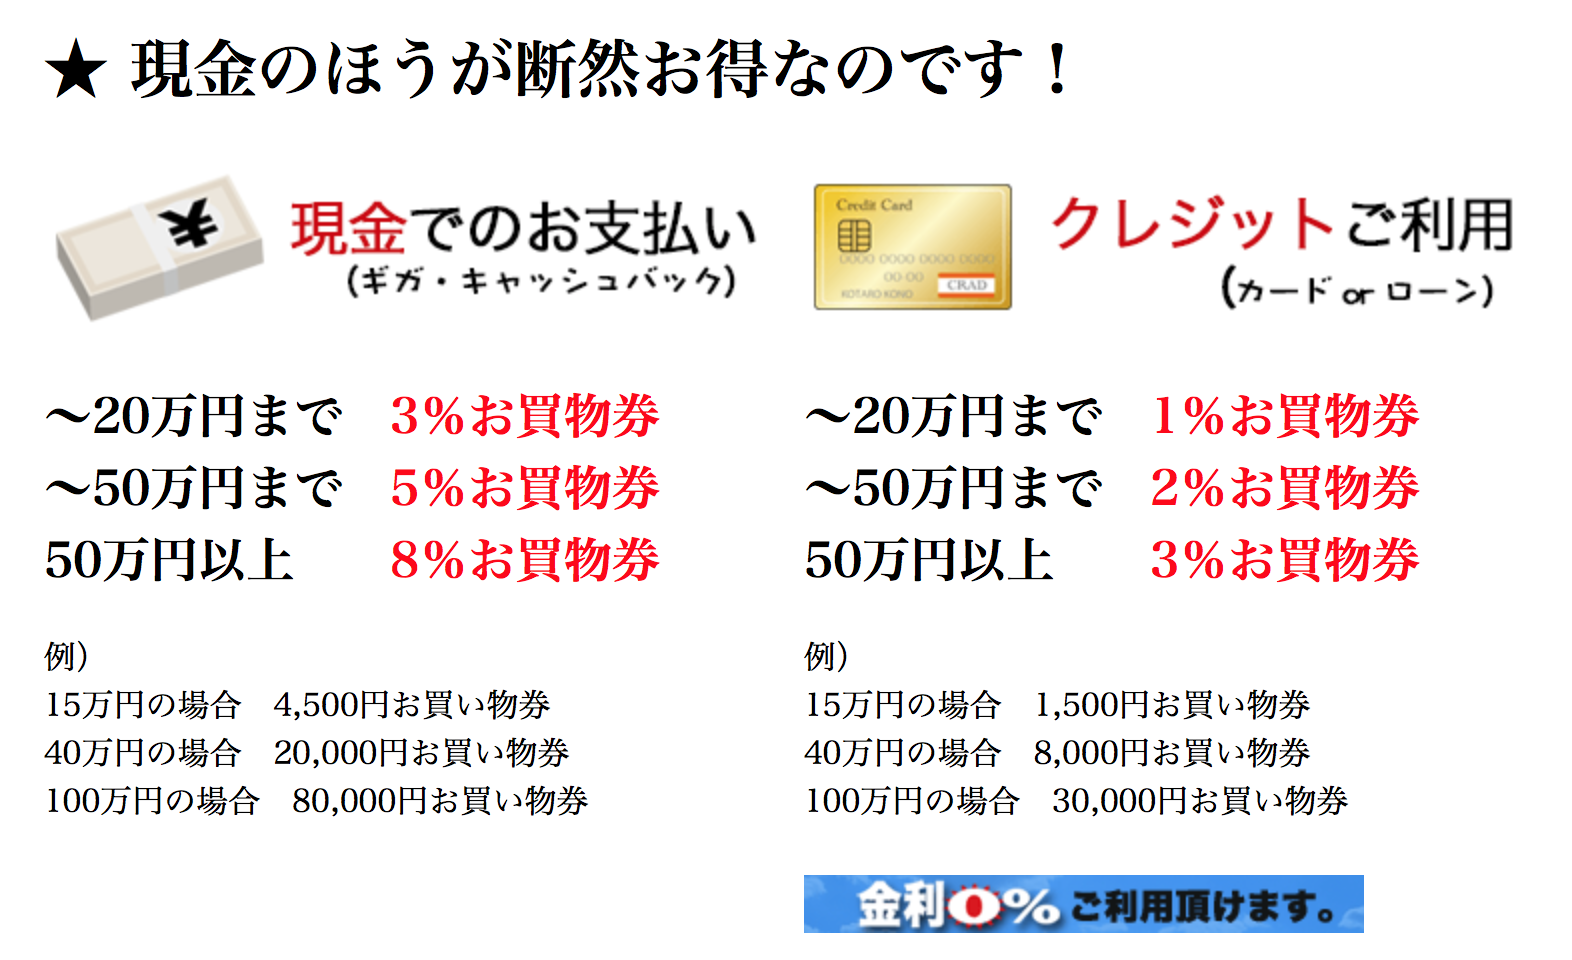 http://blog.sendai.studie.jp/%E3%82%B9%E3%82%AF%E3%83%AA%E3%83%BC%E3%83%B3%E3%82%B7%E3%83%A7%E3%83%83%E3%83%88%202016-12-02%2014.56.38.png